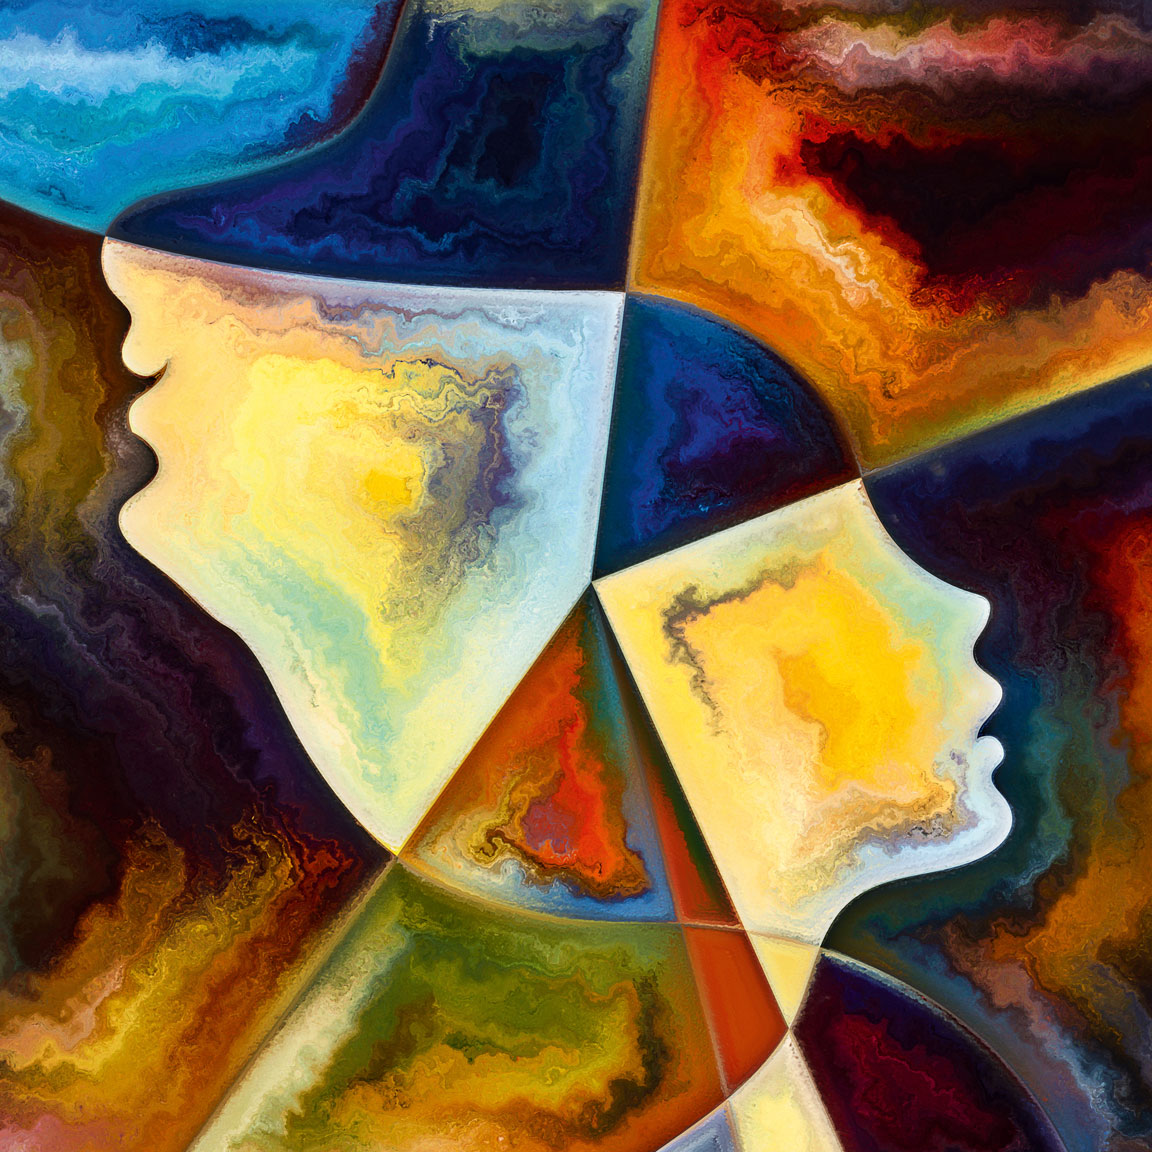 Das Bild zeigt in bunten, kräftigen Farben gegensätzlich angeordnete Silhouetten zweier Köpfe.